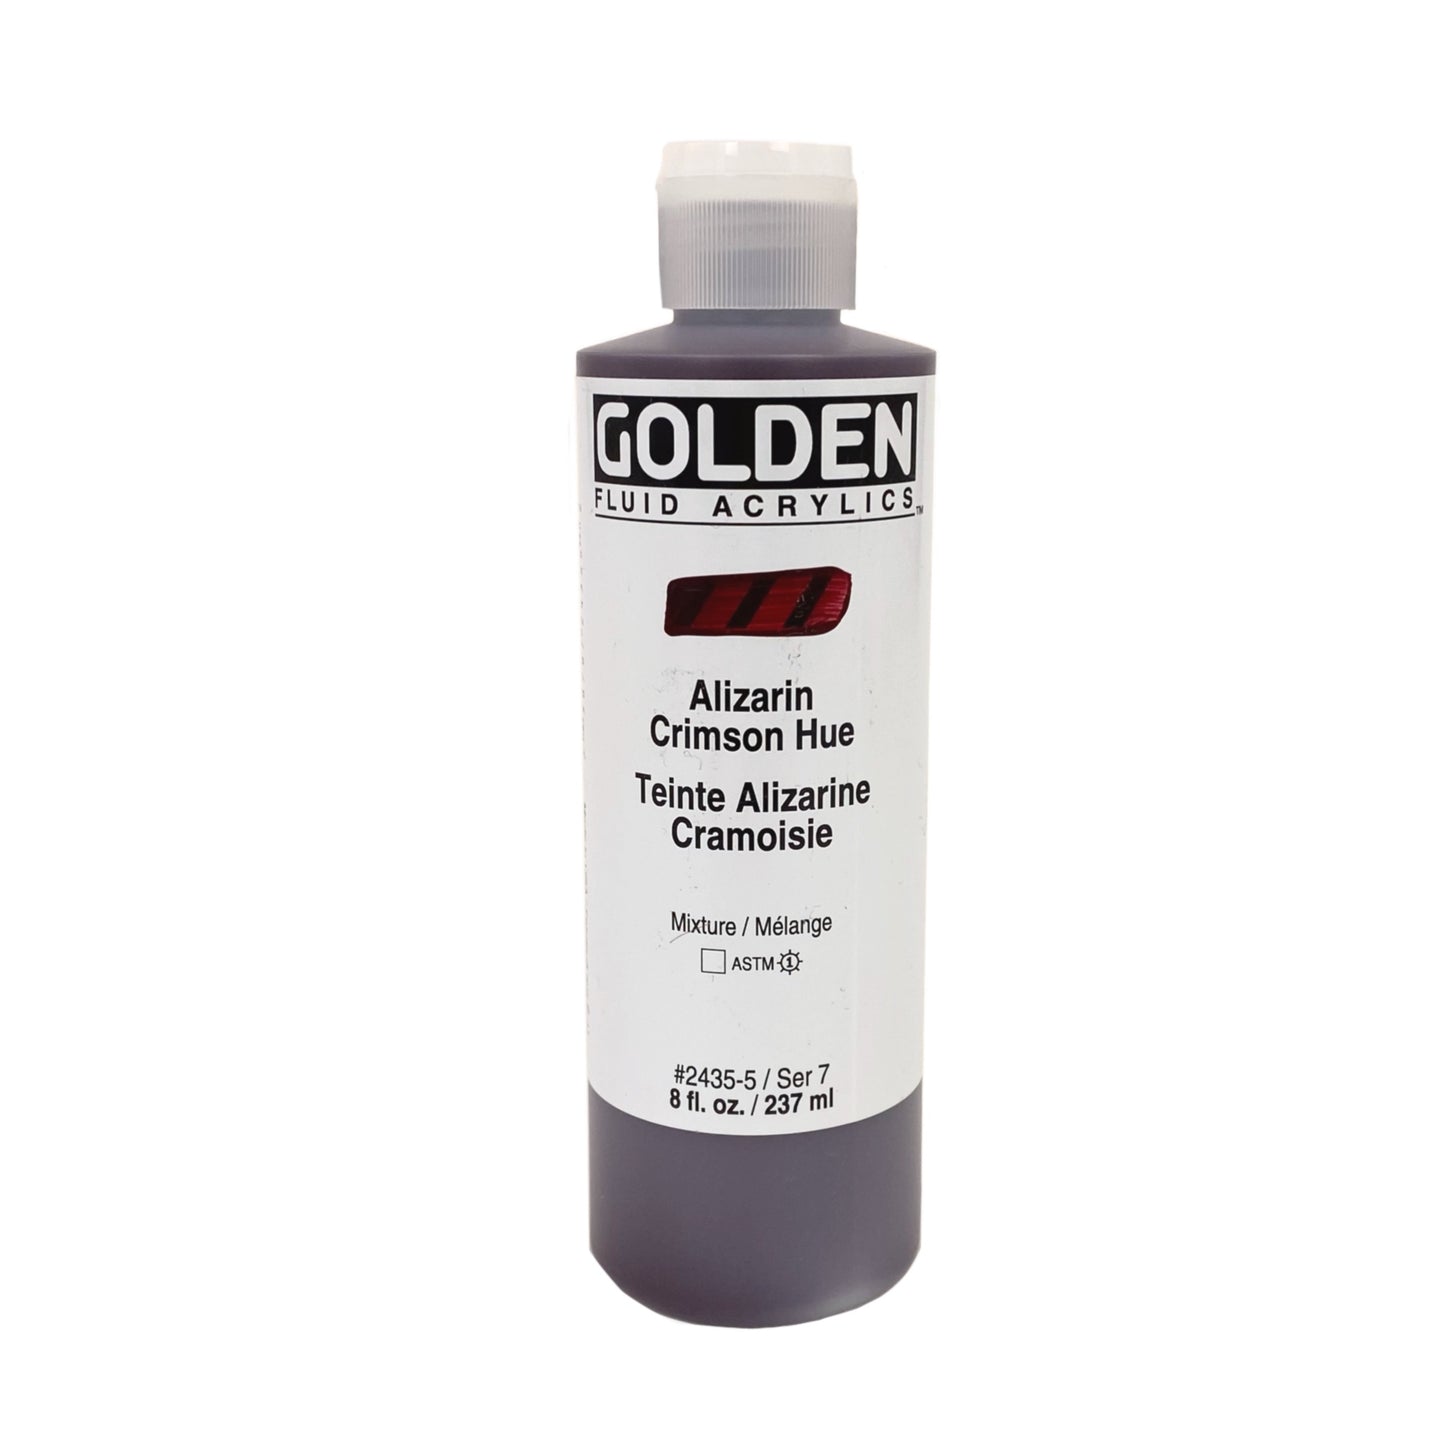 Golden Fluid Acrylics - 8 oz - Alizarin Crimson Hue by Golden - K. A. Artist Shop